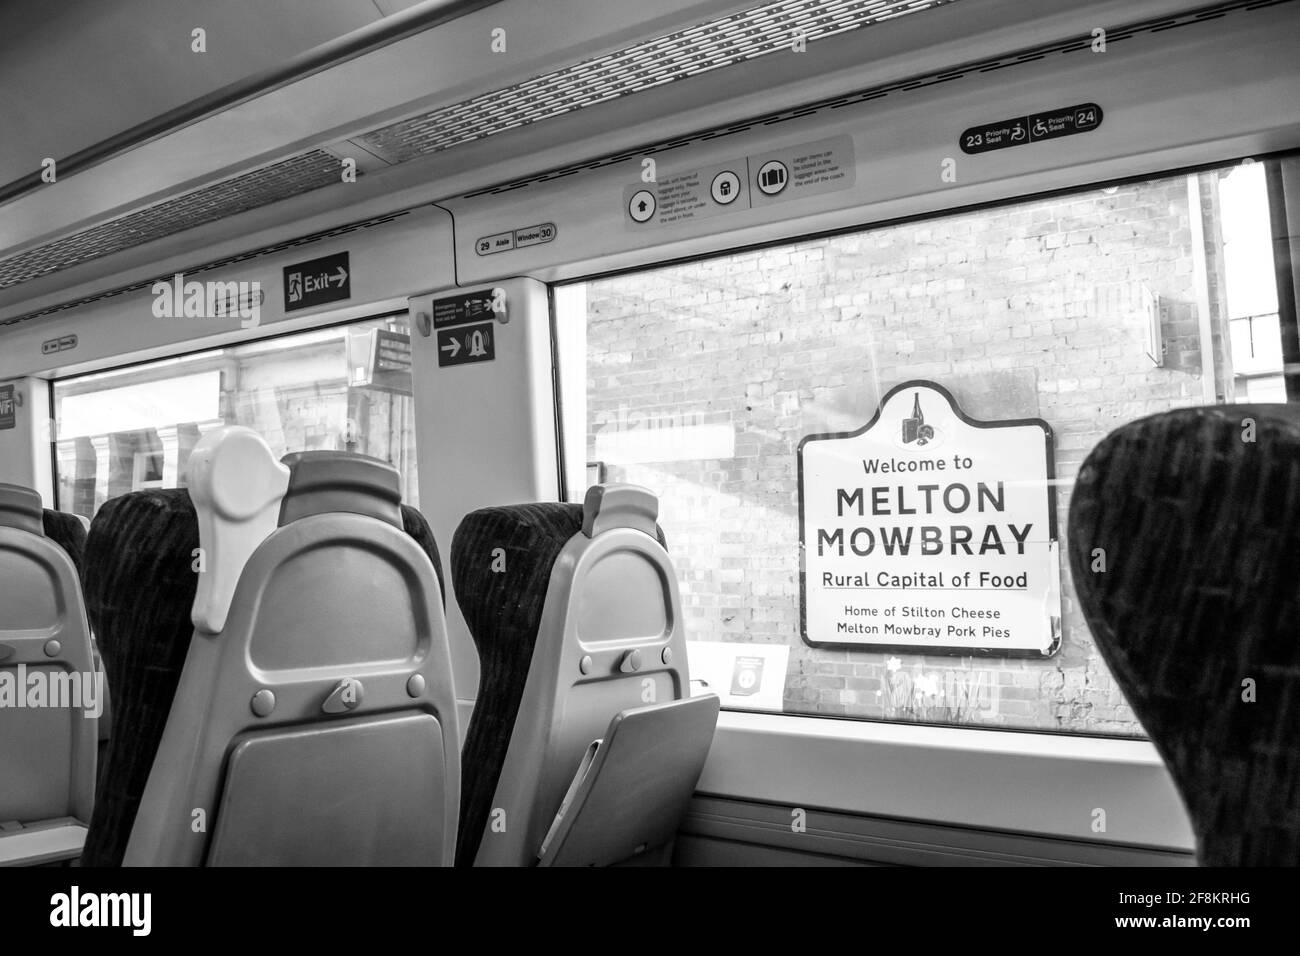 MELTON MOWBRAY, ANGLETERRE- 3 avril 2021: Bienvenue au panneau MELTON MOWBRAY vu de l'intérieur d'un train de cross-country Banque D'Images